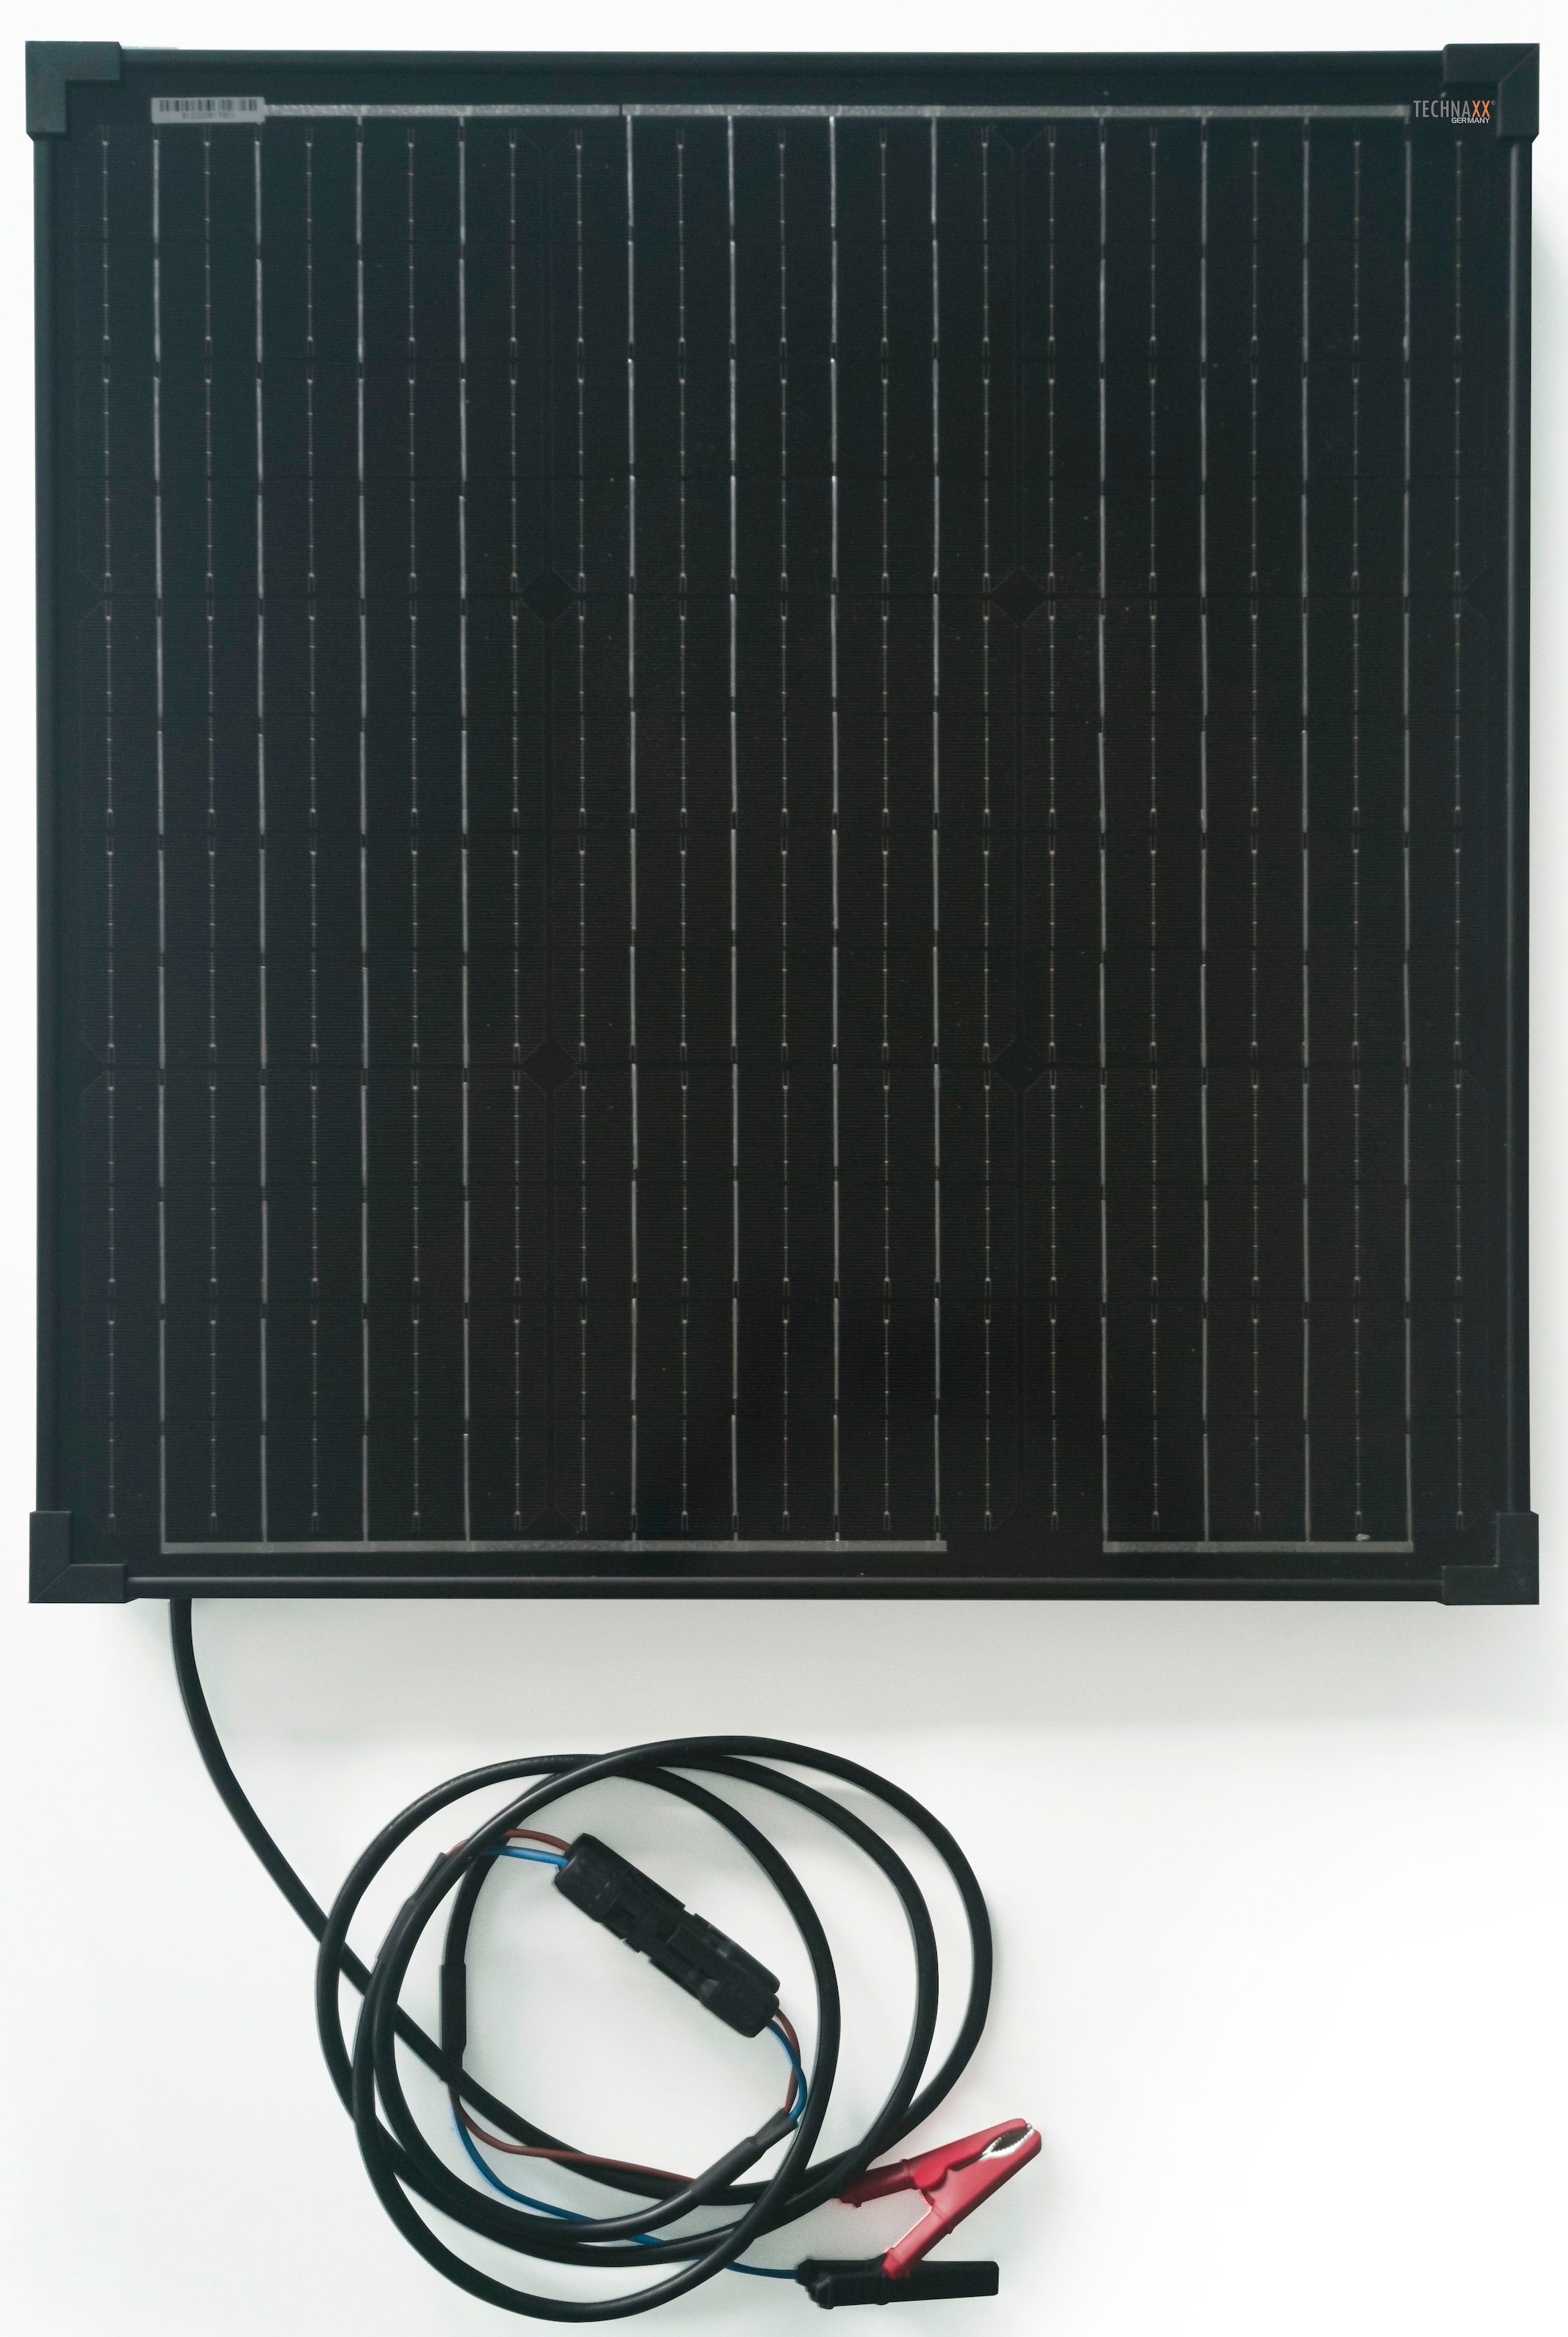 Technaxx Solarladegerät »TX-214«, 50 W Solar Ladeset